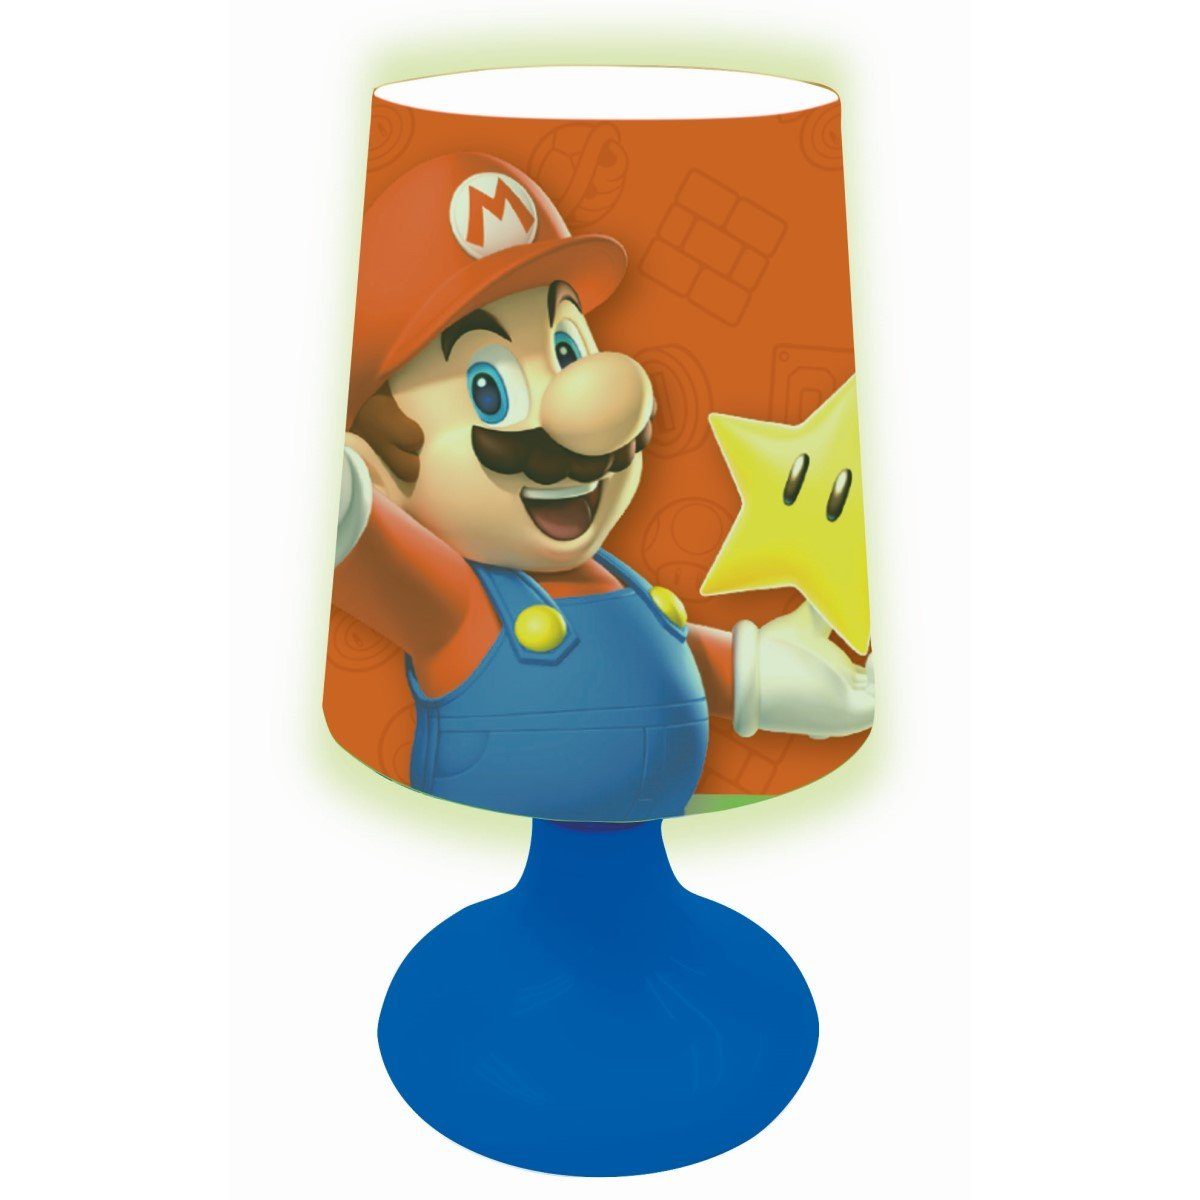 Super mini Mario Taschenlampe und Nachtlicht Lexibook® tragbare Nachttischlampe